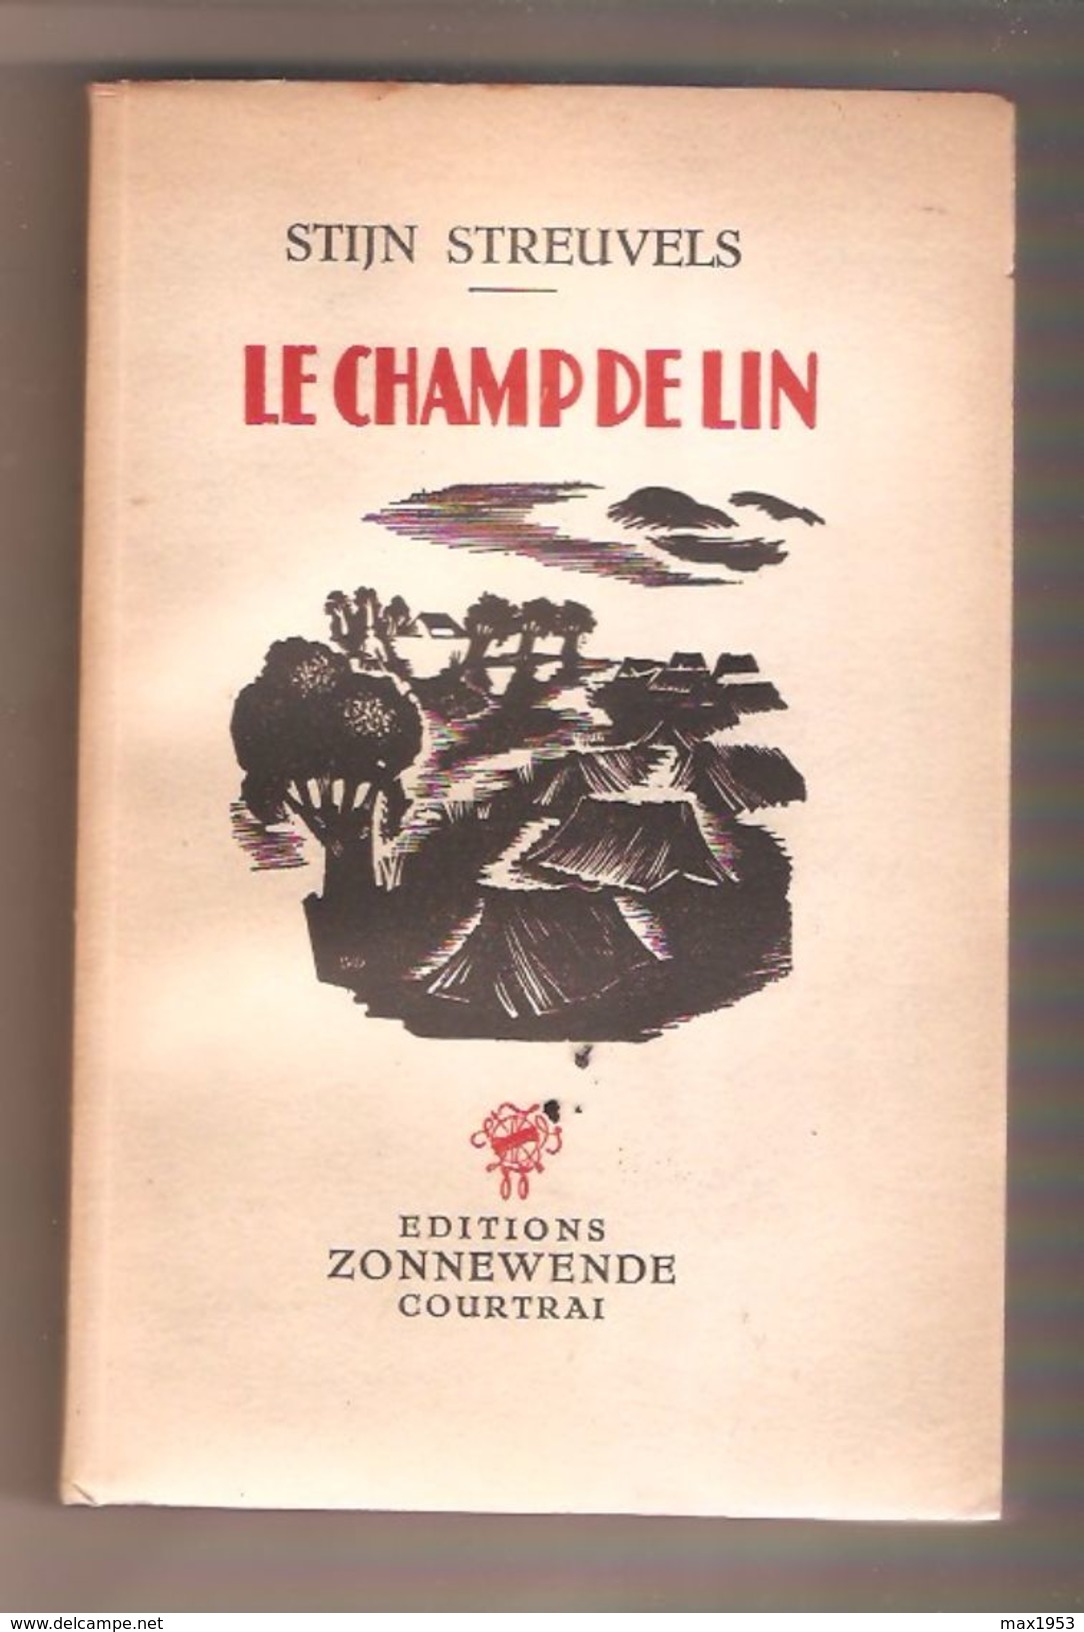 STIJN STREUVELS - LE CHAMP DE LIN - Editions Zonnewende, Courtrai, 1943 - Belgian Authors